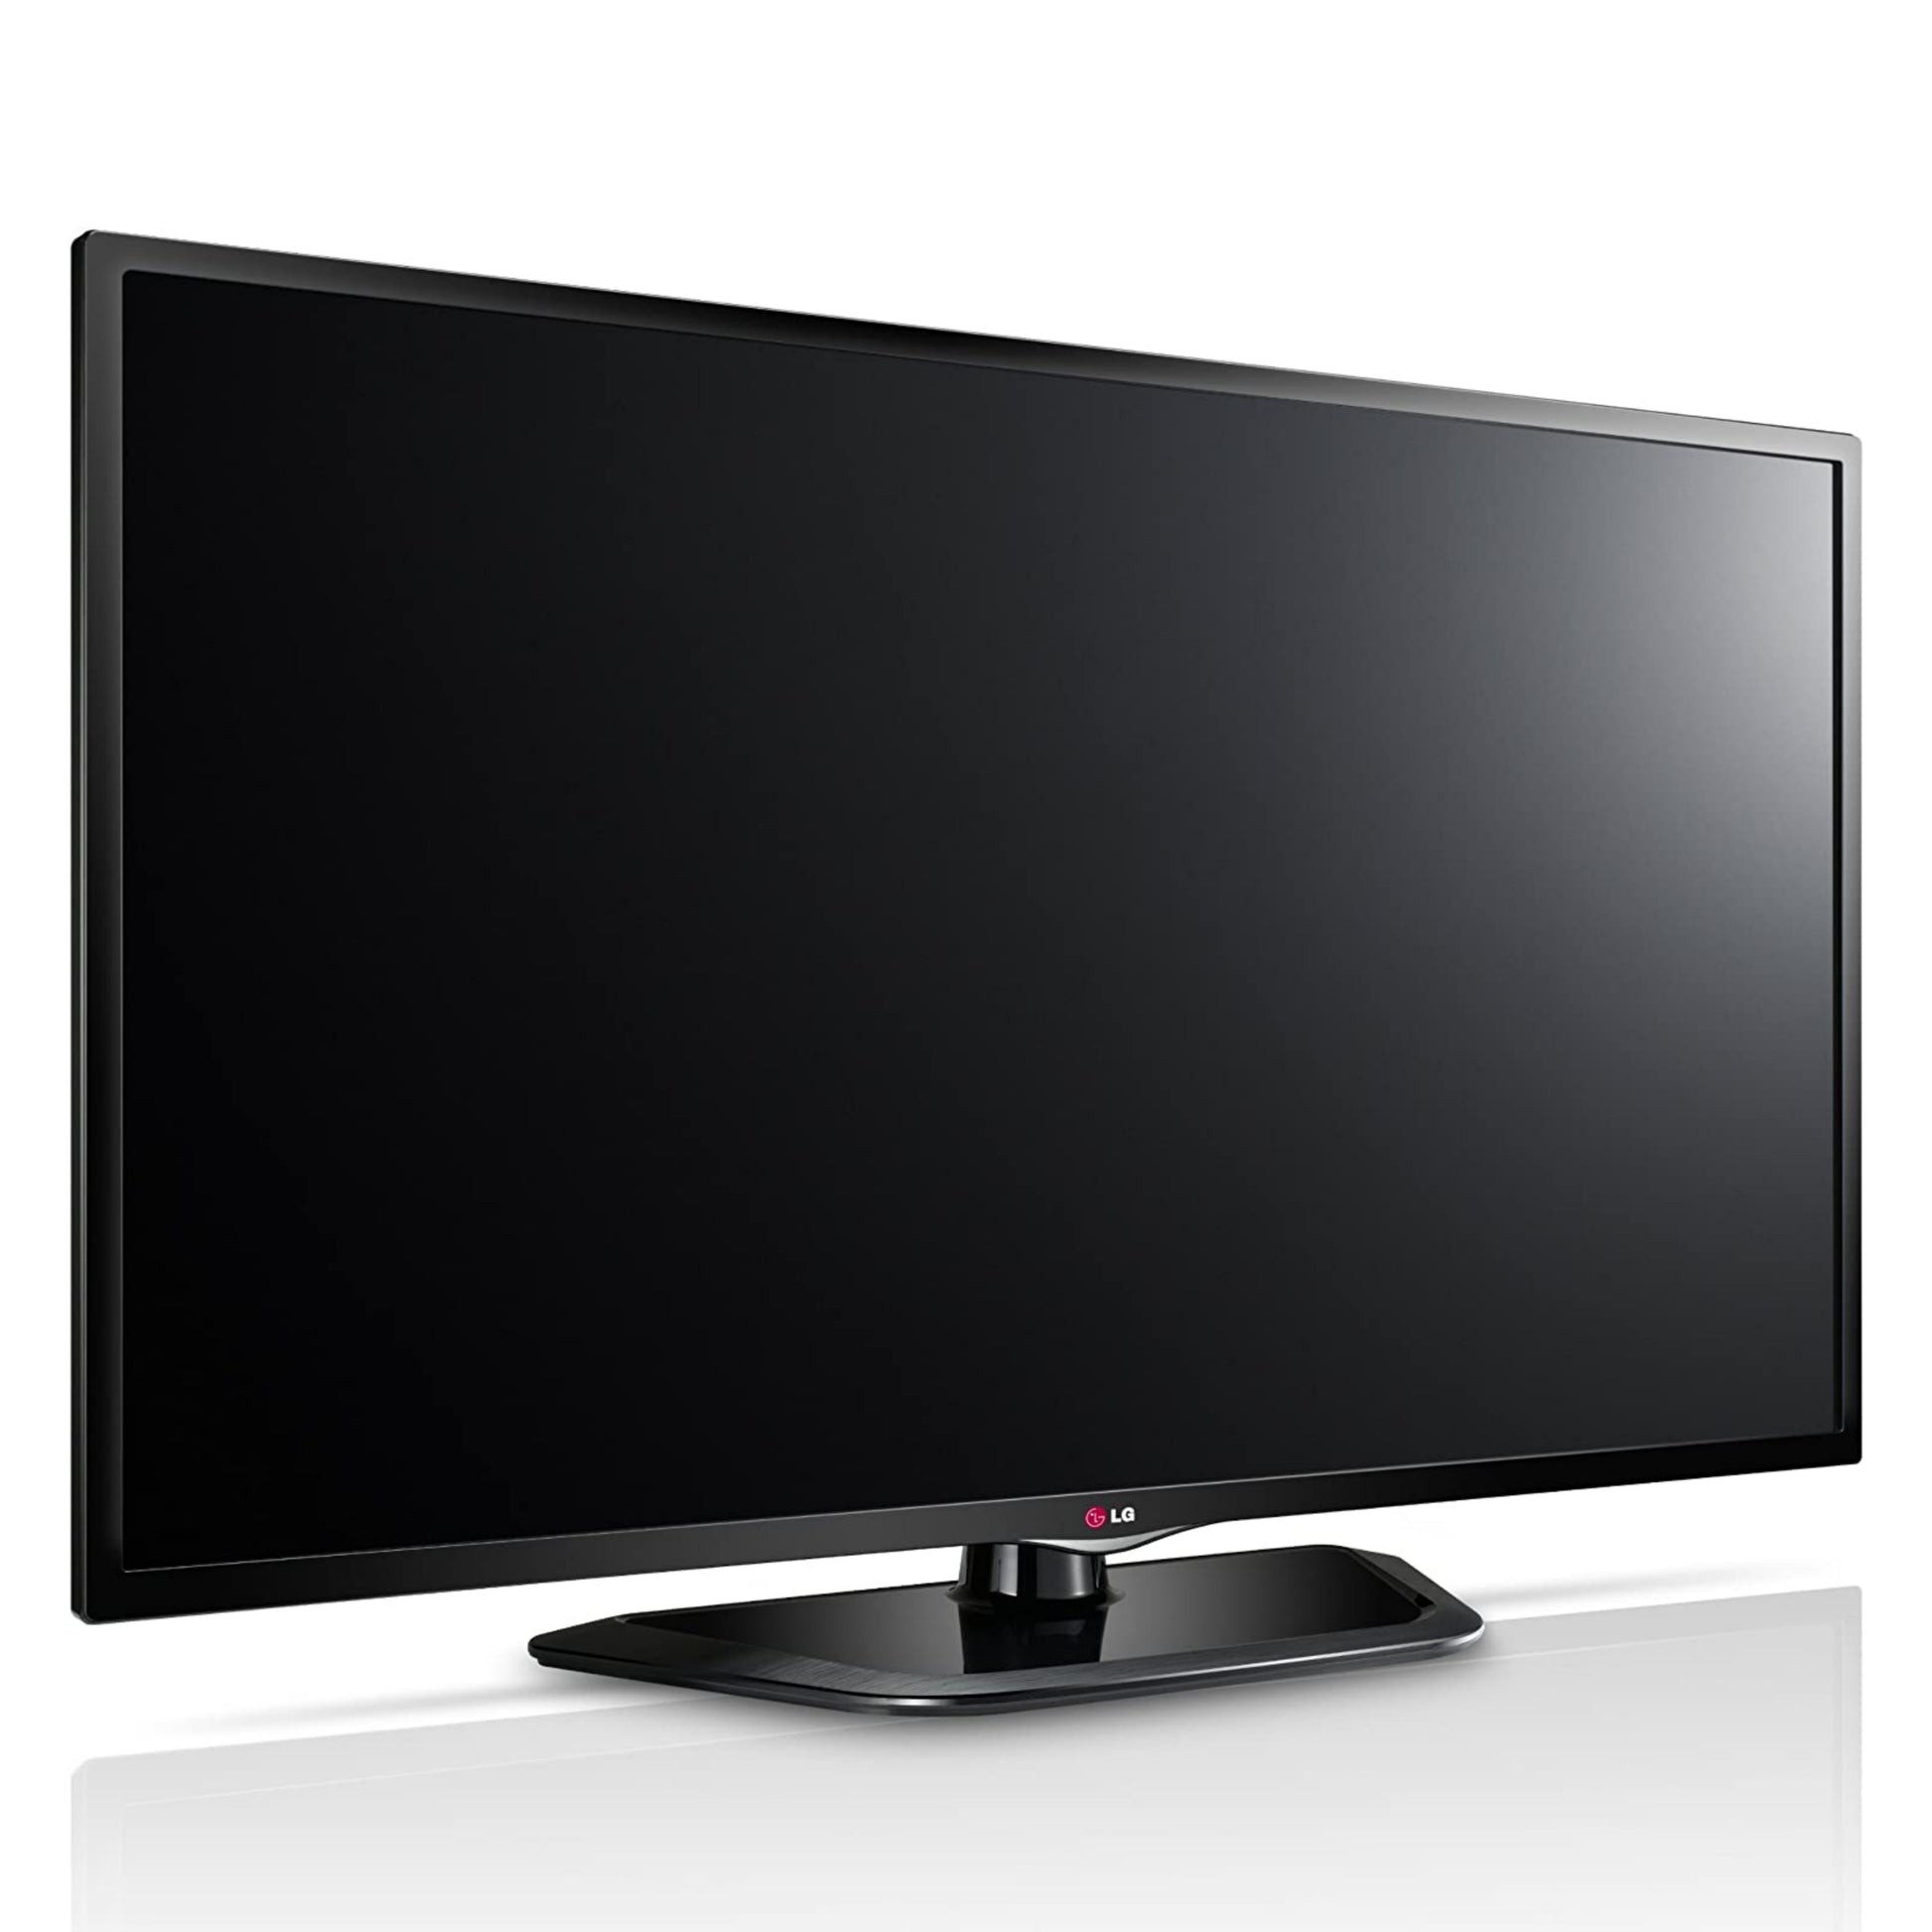 LG 32LN5406 Full HD Triple Tuner LED TV